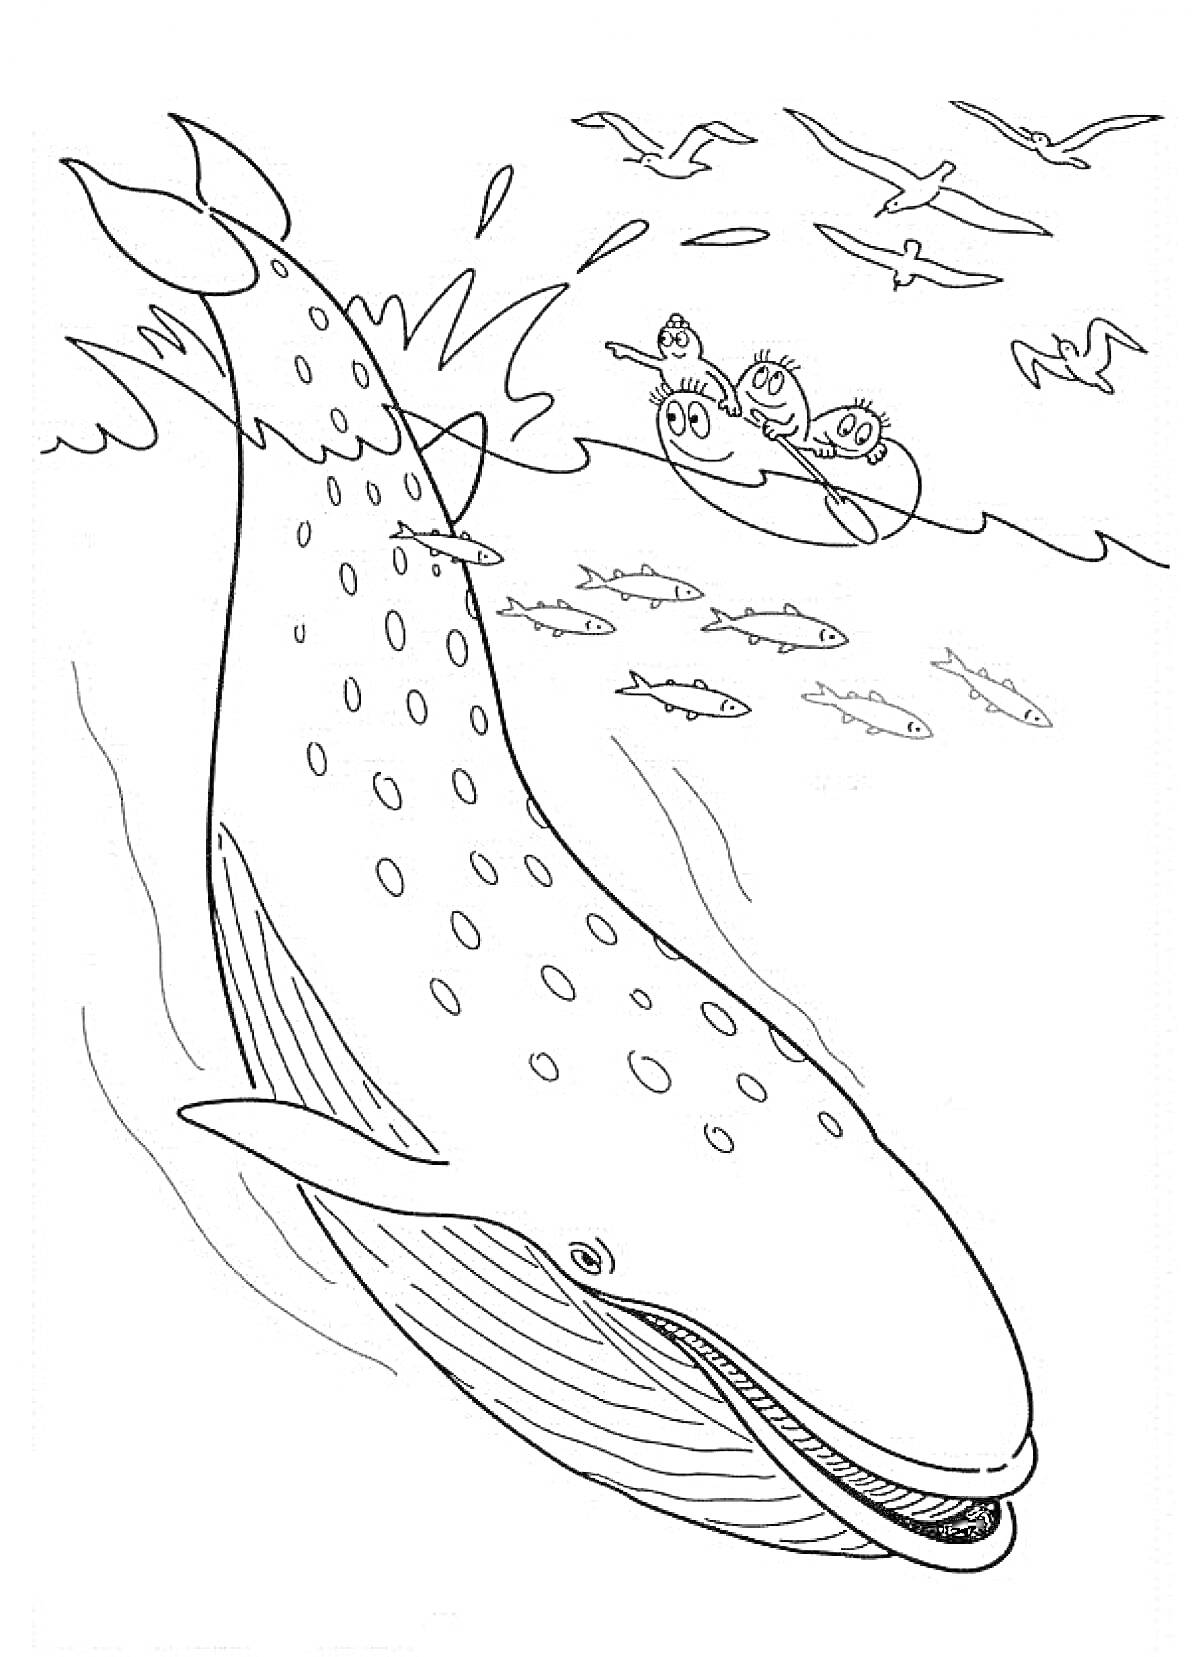 Раскраска Кит, стая рыб, лодка с тремя людьми, летящие чайки